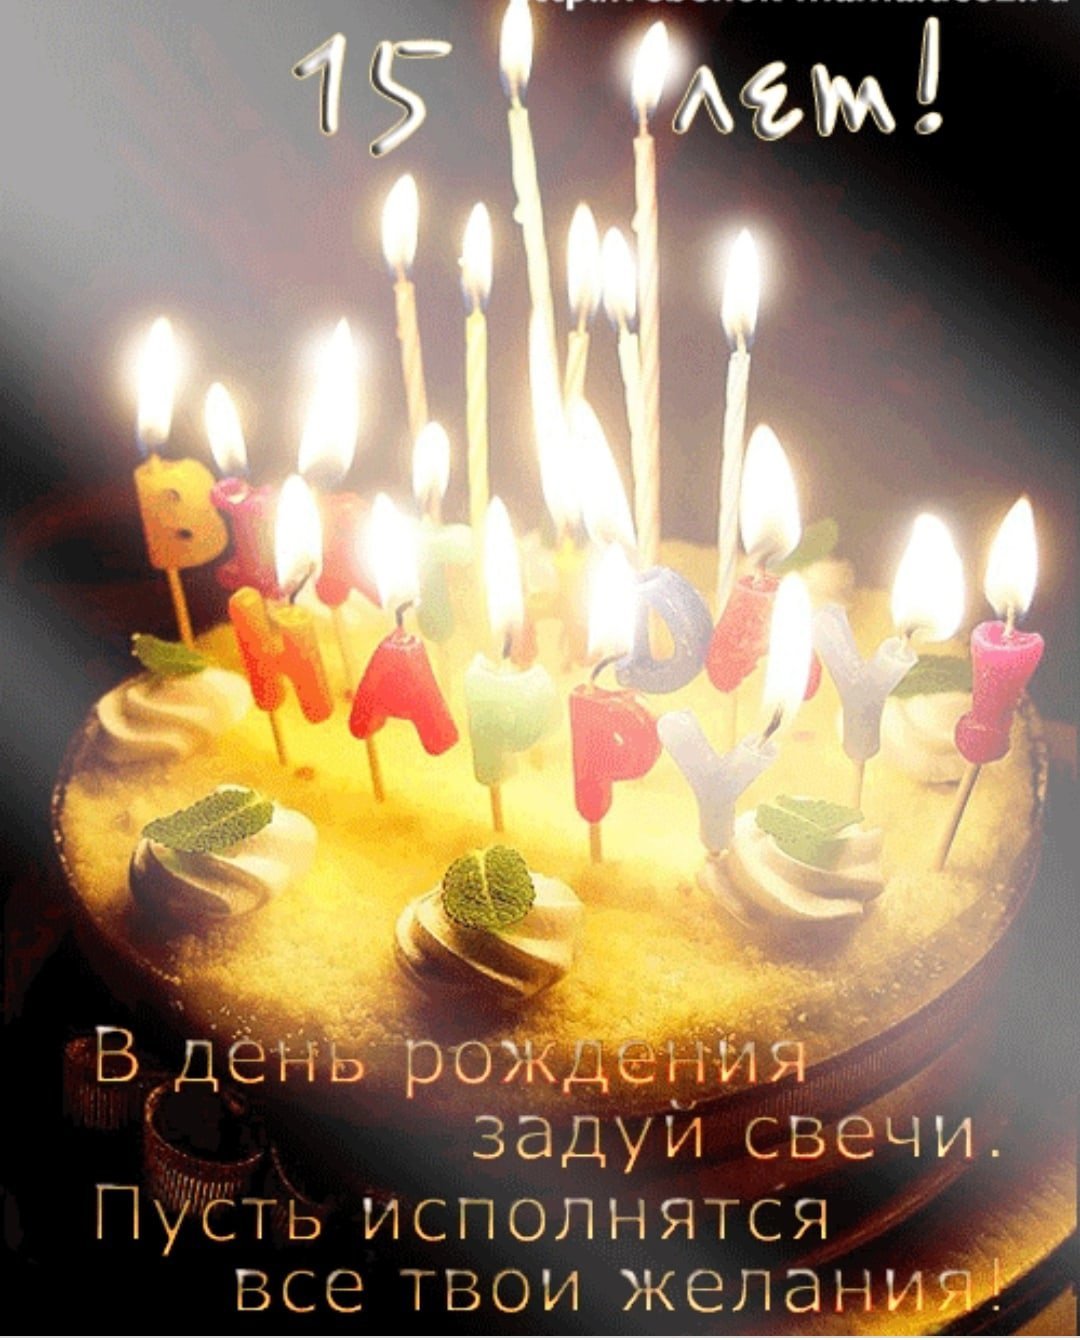 Поздравление подростку 15 лет. Поздравления с днём рождения 15 лет. Торт со свечками. Торт со свечами с днем рождения картинки. Поздравления с днём рождения 15 лет девочке.